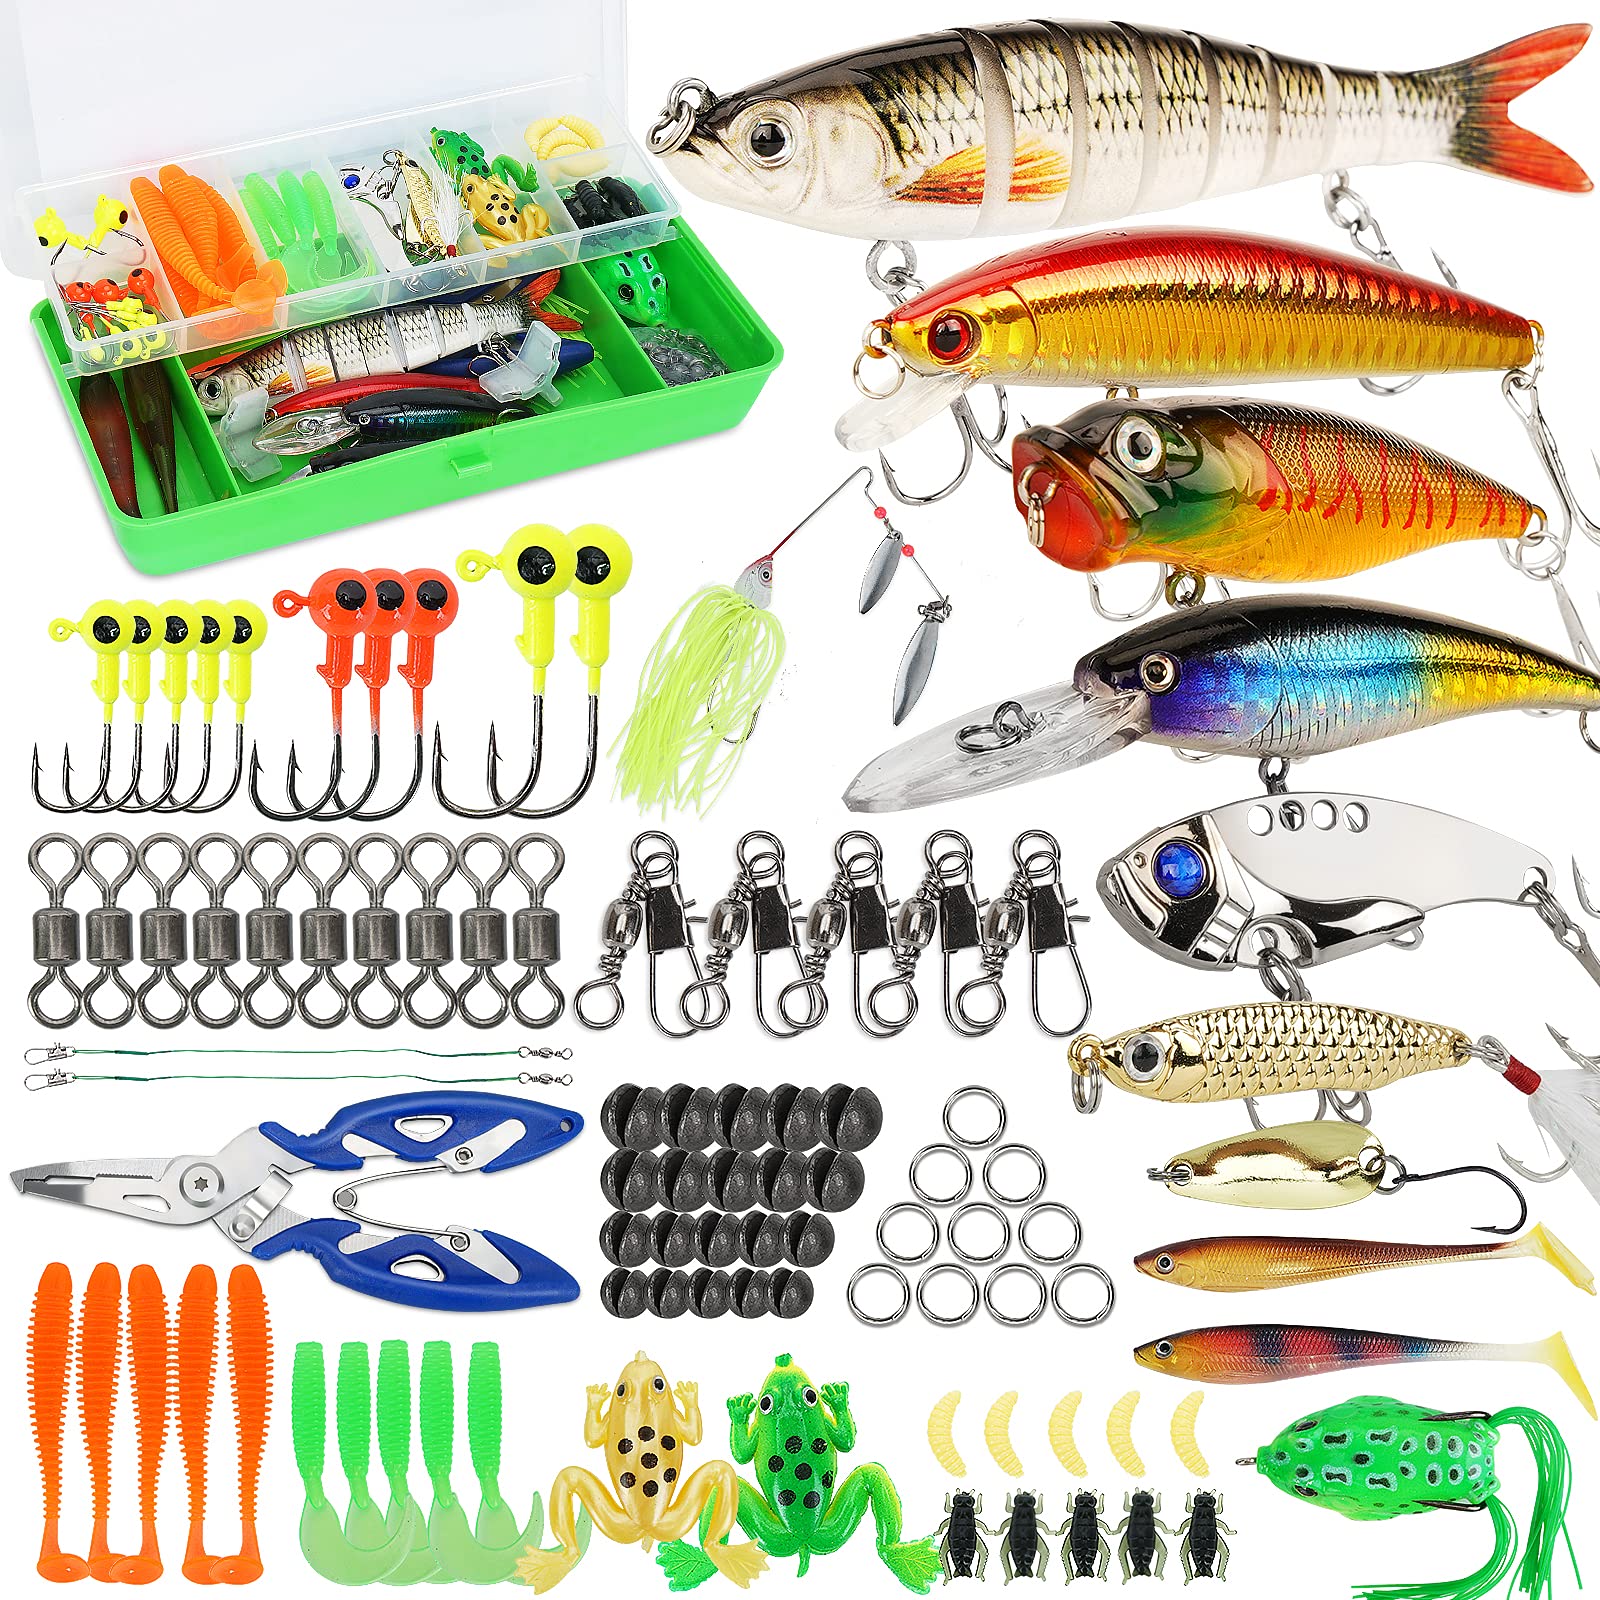 Shop Fishing Gear, Fishing Supplies & Equipment